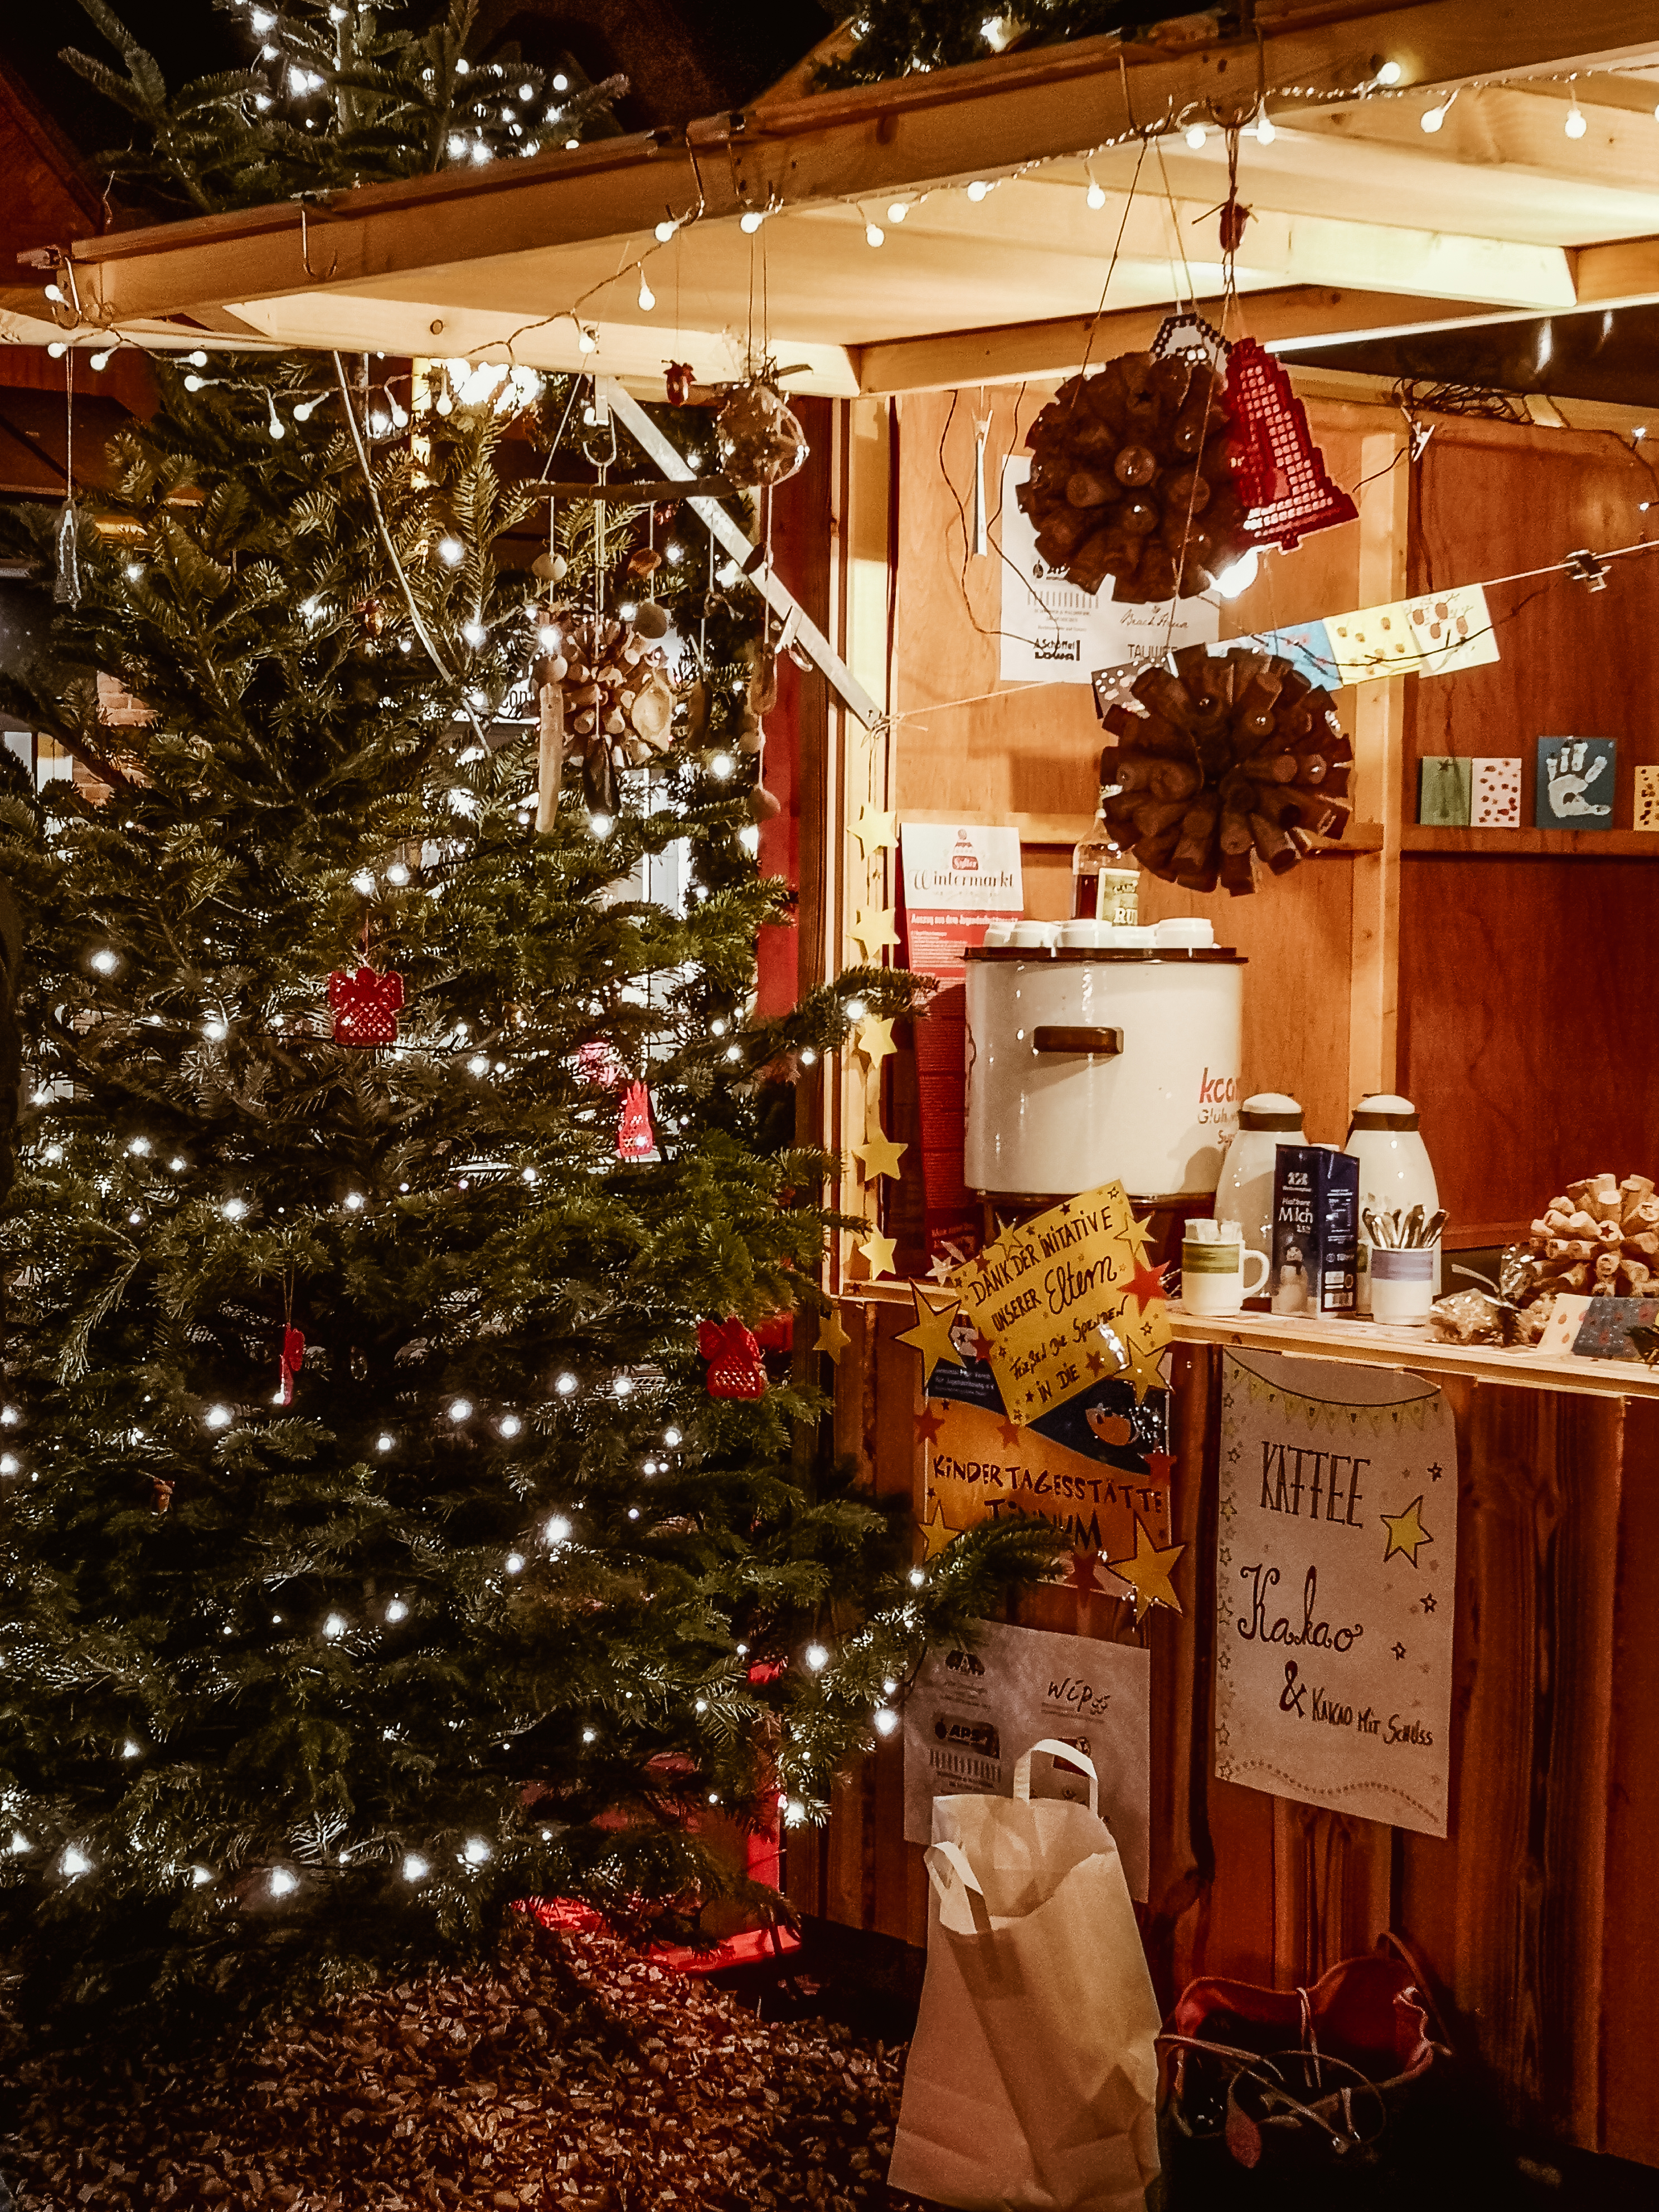 Sylt im Dezember: Weihnachten, Wintermarkt, Adventszauber